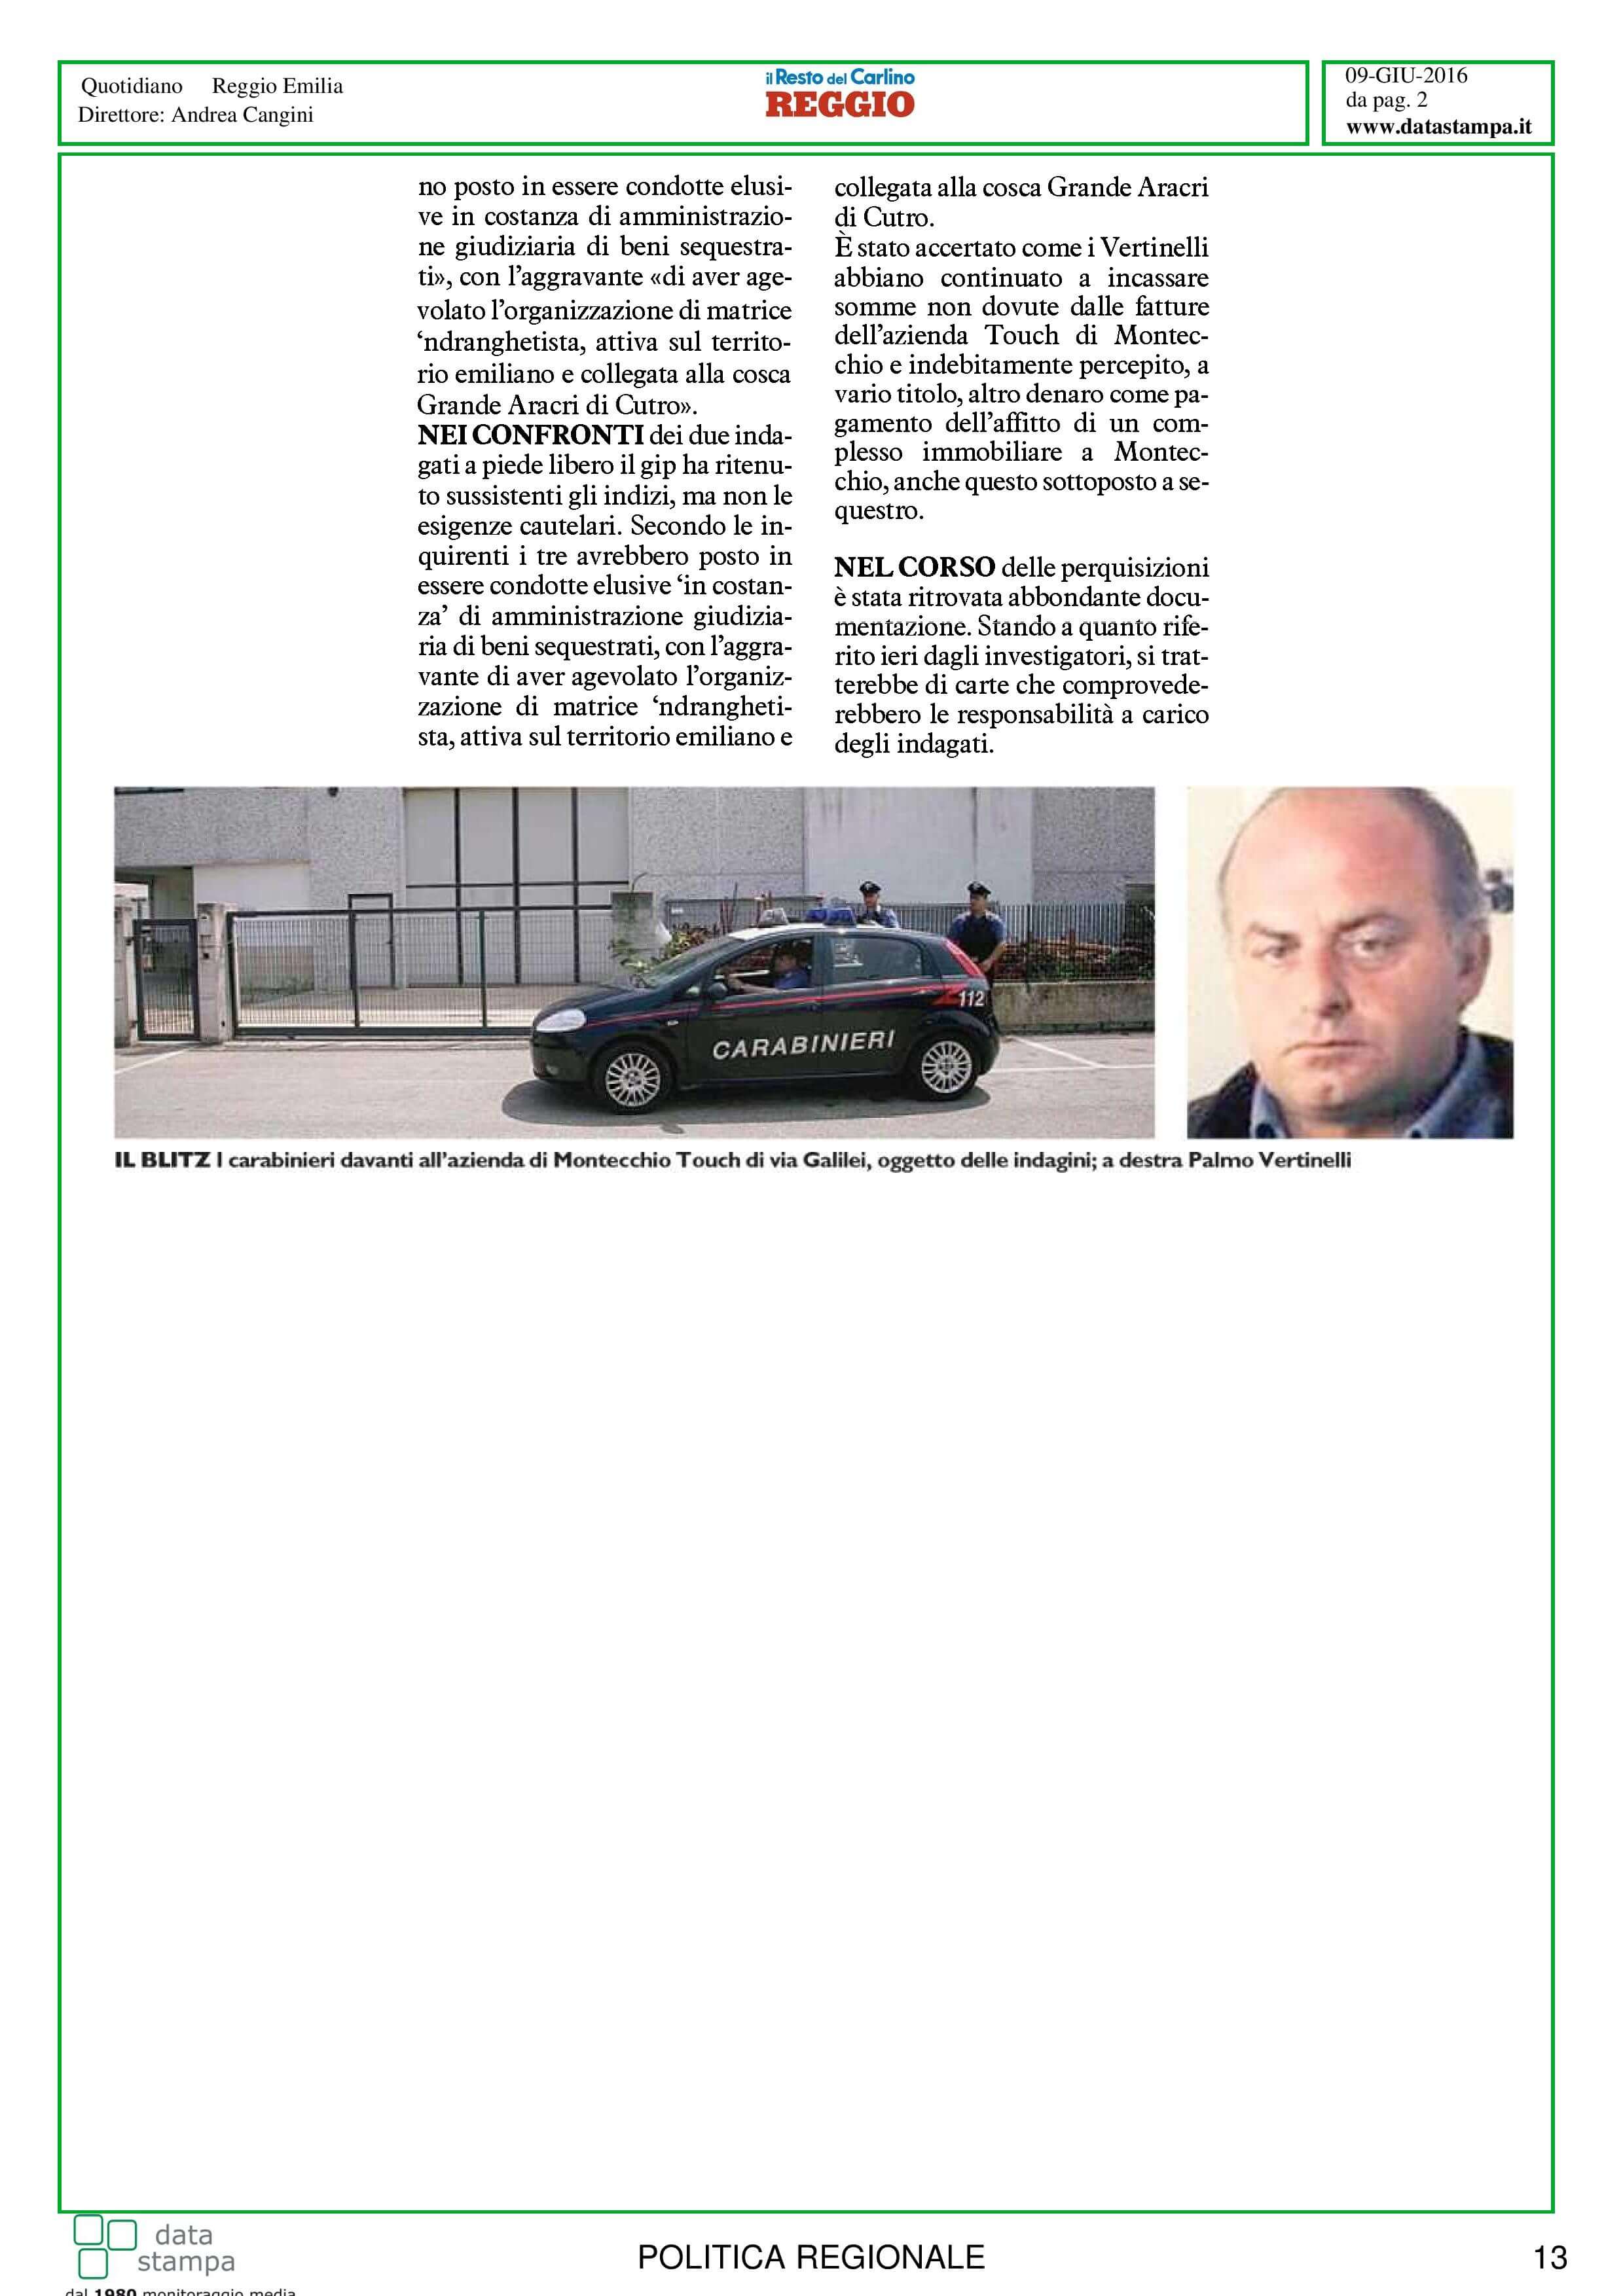 mafia-legalita-in-er-9-10-giugno-page-014